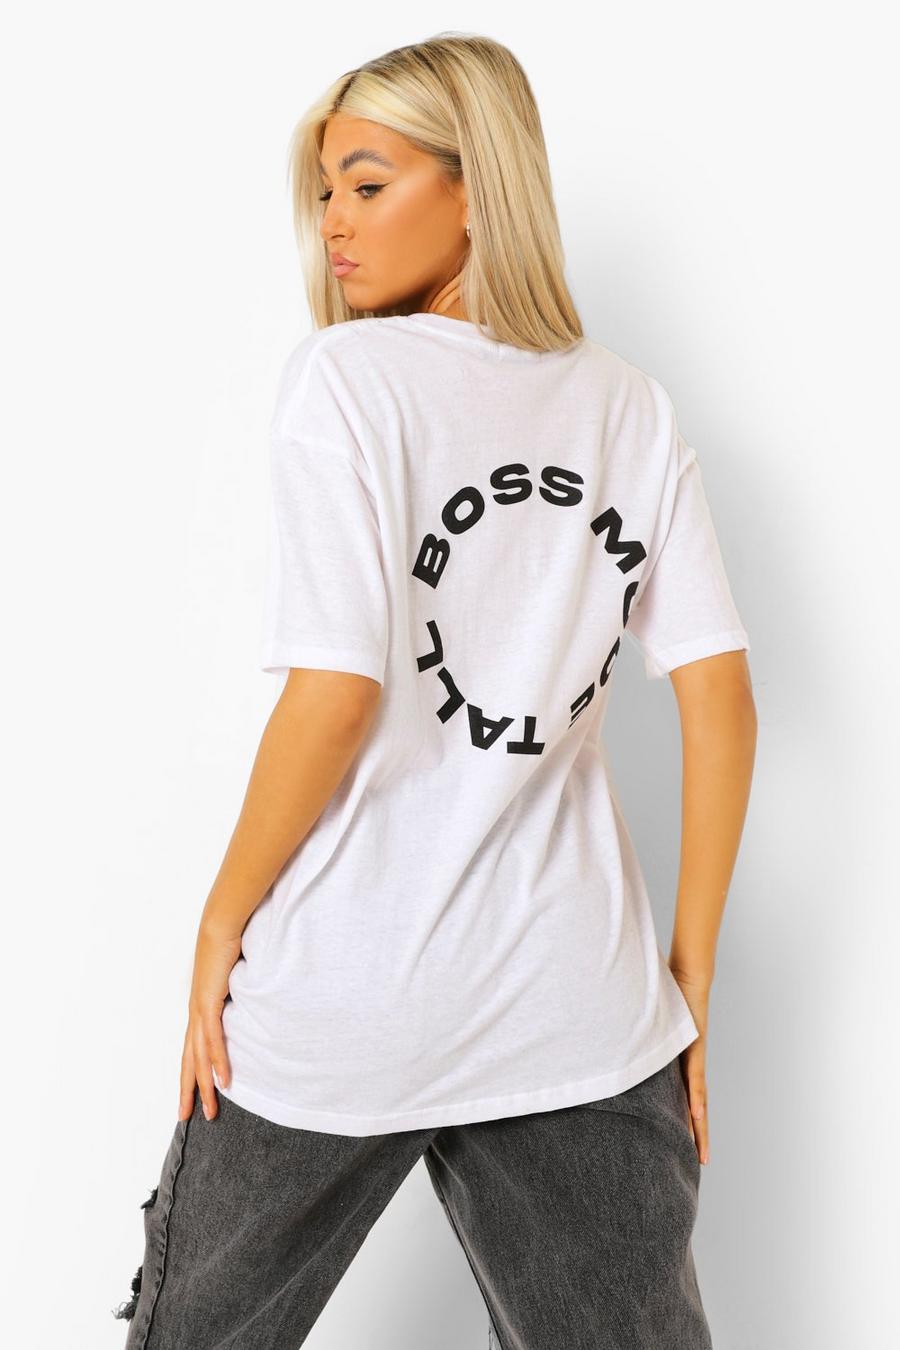 Camiseta con eslogan “Boss Mode” en la espalda Tall, Blanco image number 1